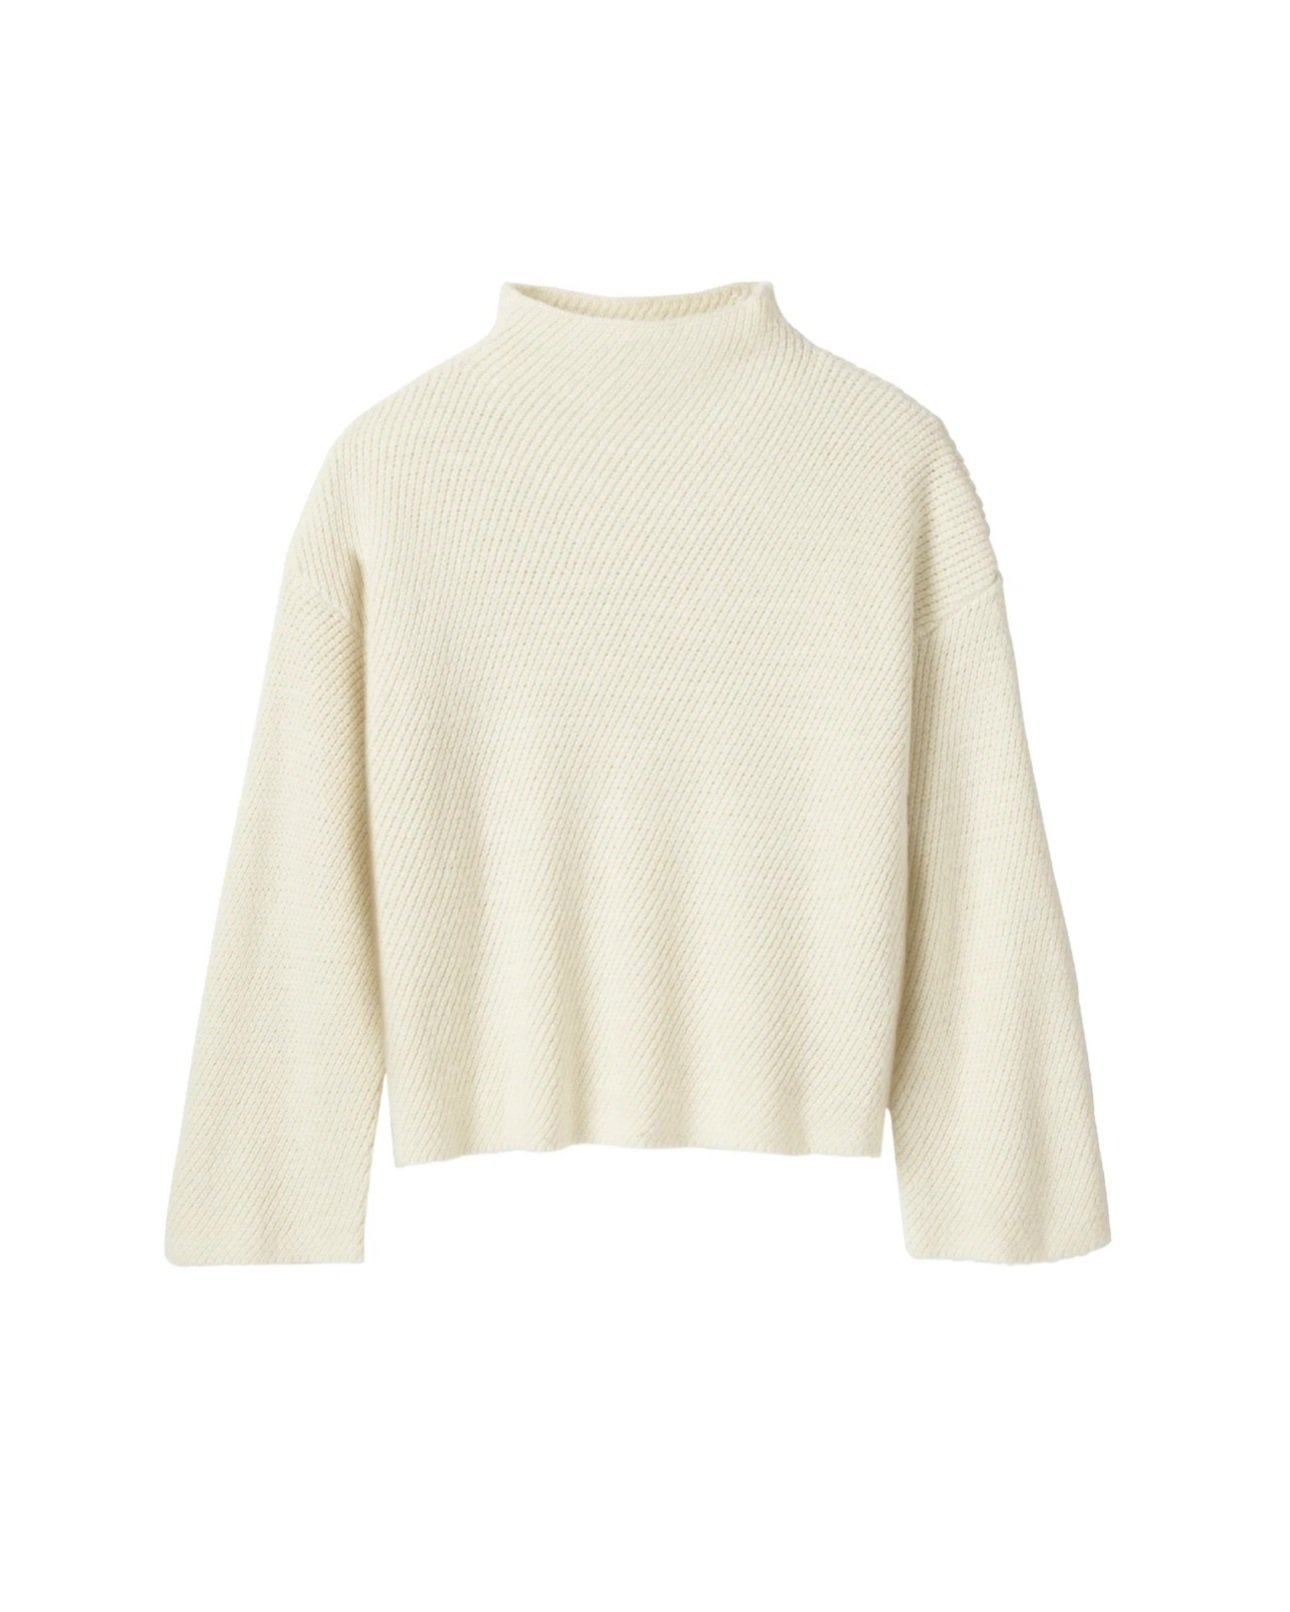 Darling Earnest Sweater